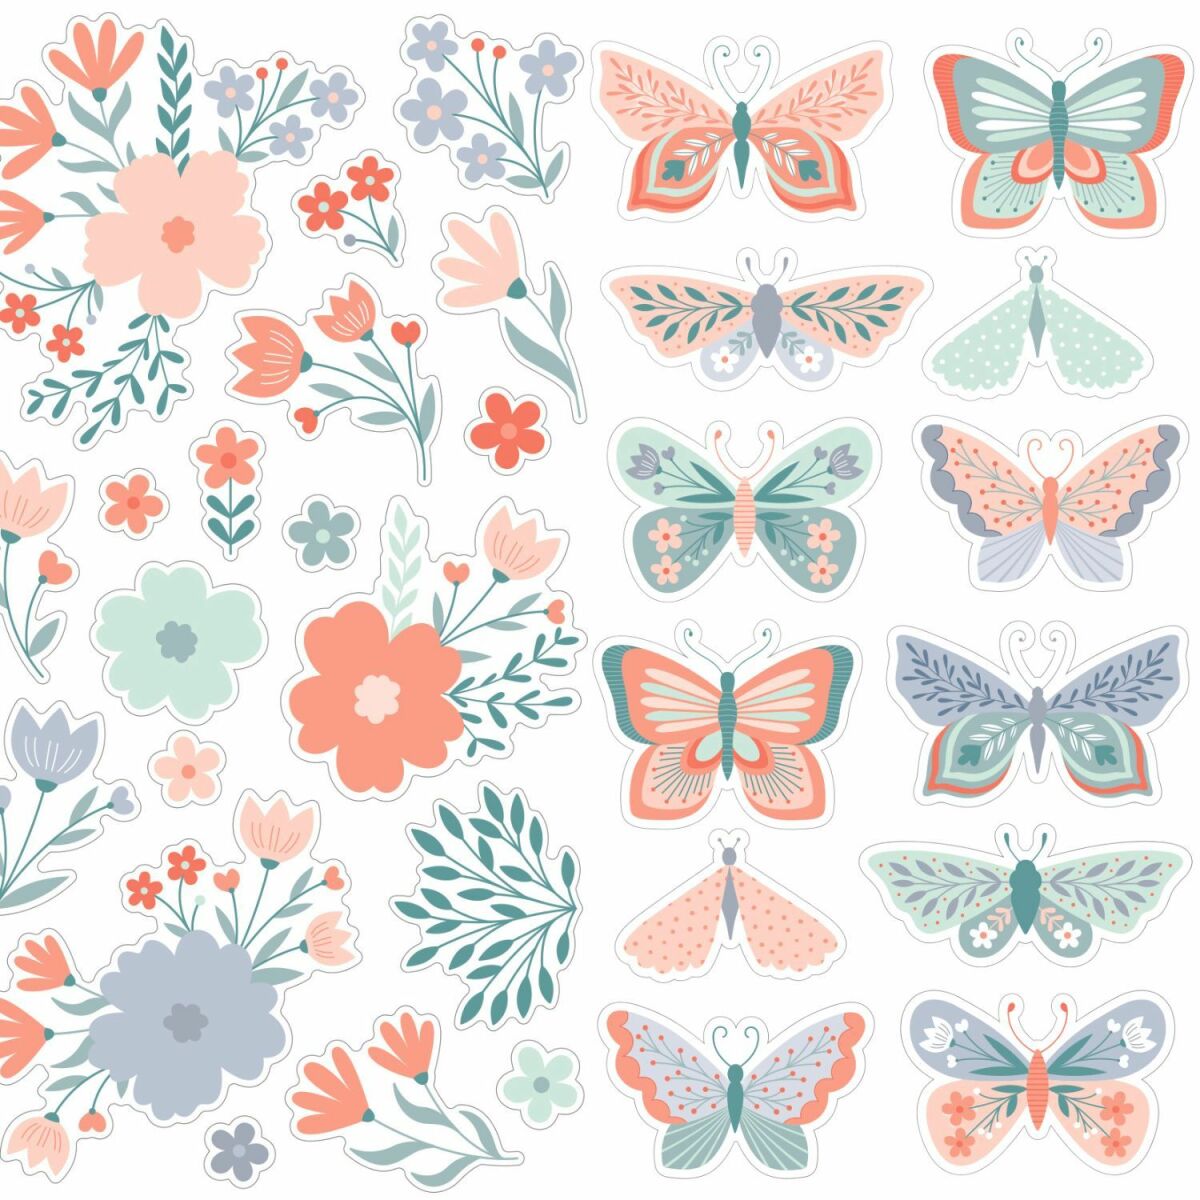 Décoration chambre enfant Artemio Lot stickers 3D fleurs / papillons